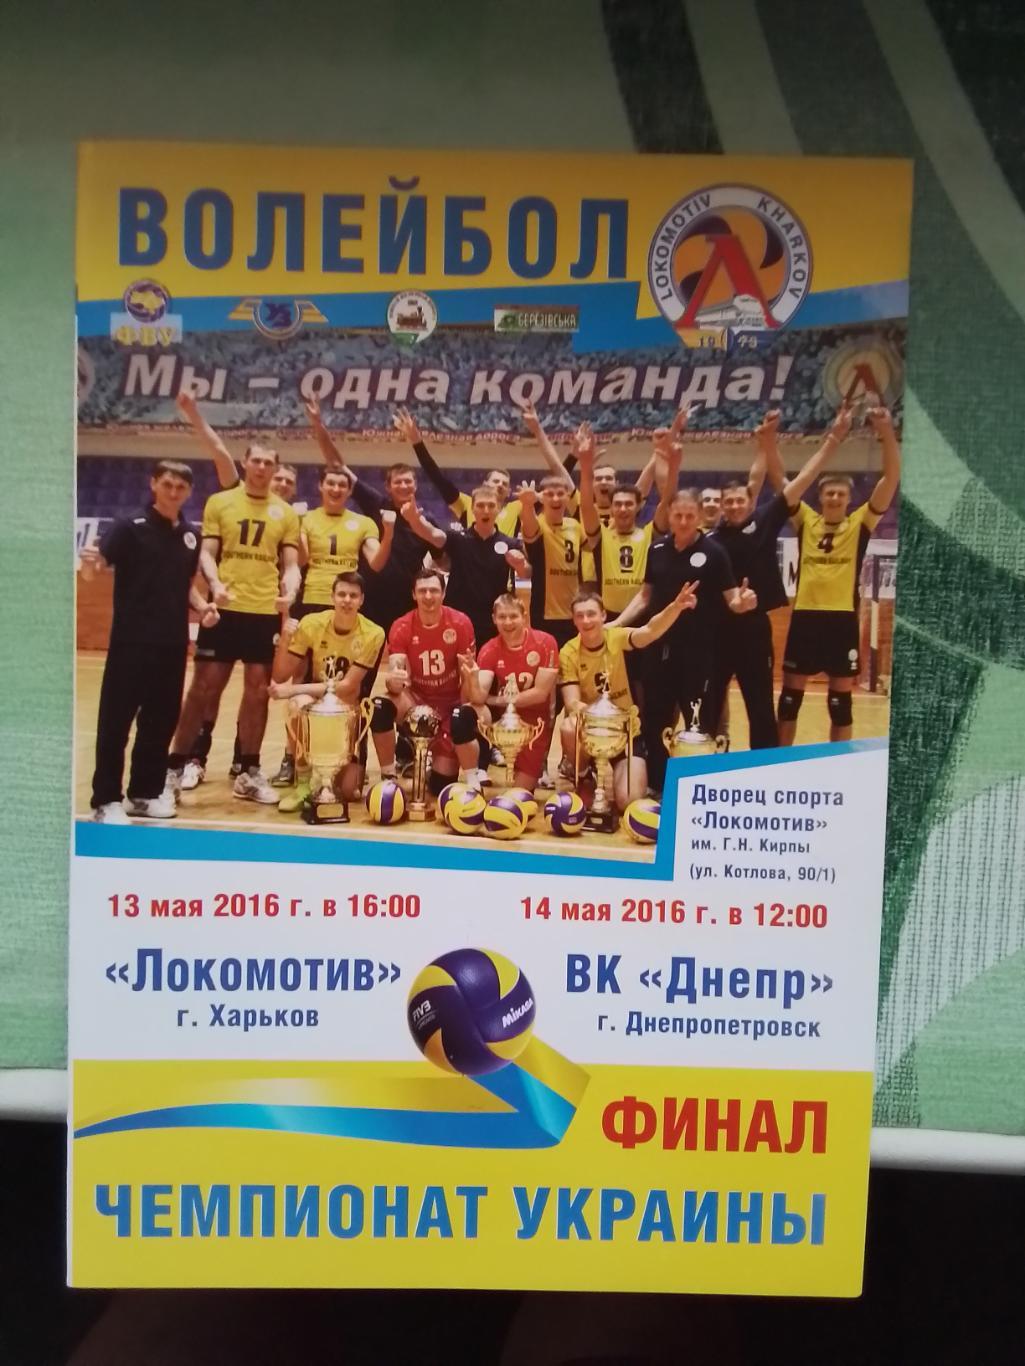 Локомотив Харьков - Днепр Днепропетровск 2015 - 2016 Чемпионат Украины, финал